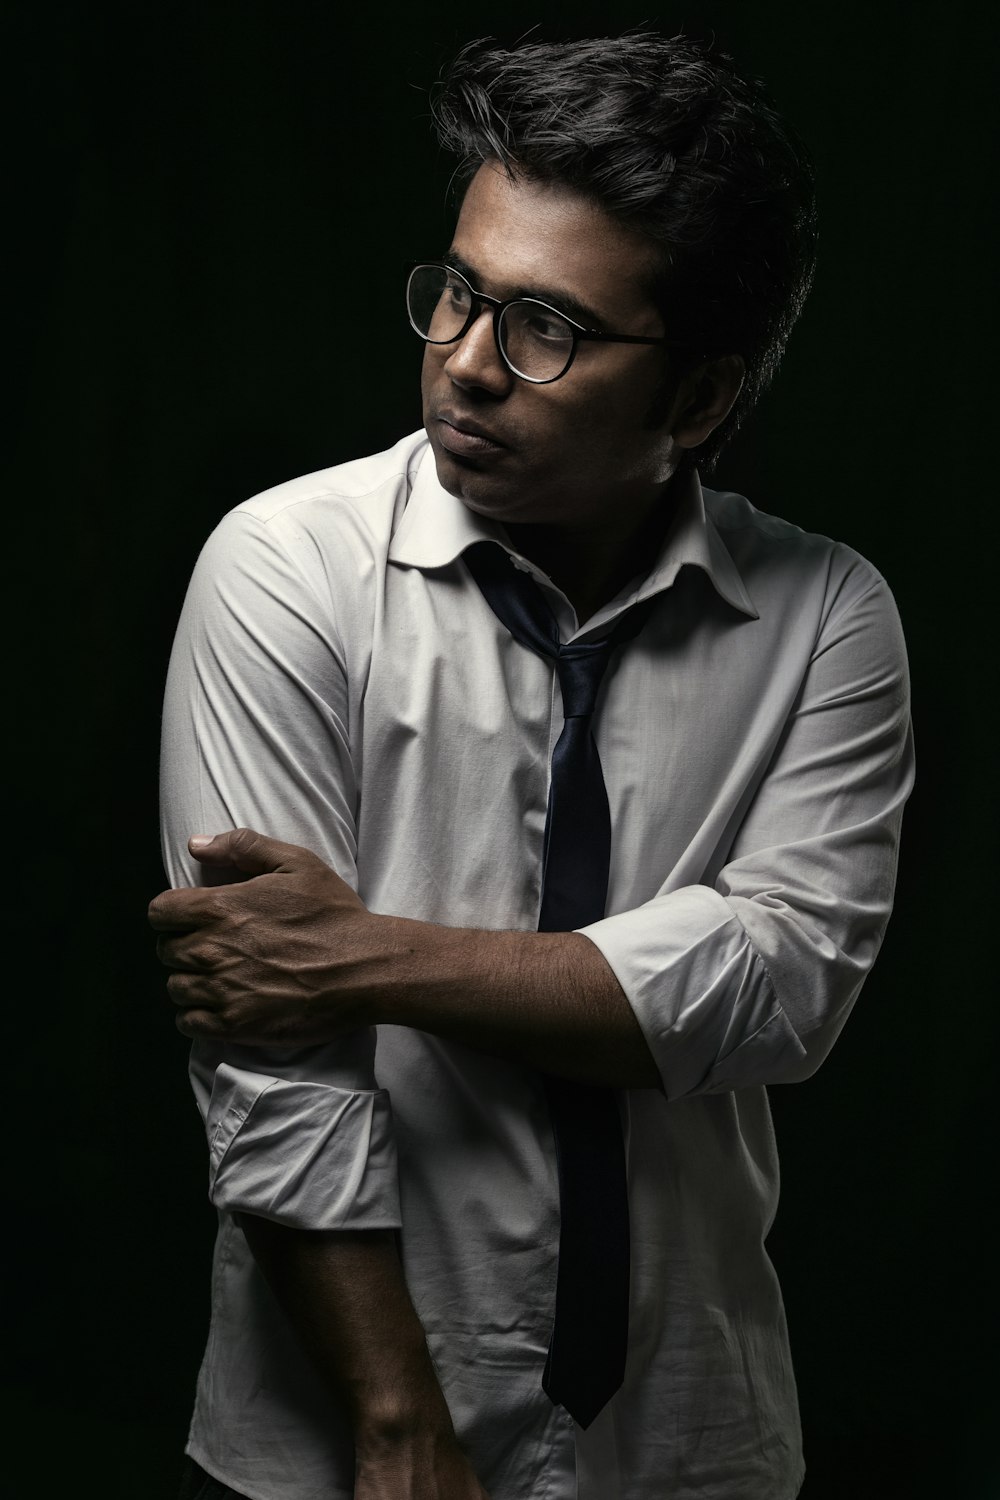 man in white dress shirt wearing black framed eyeglasses